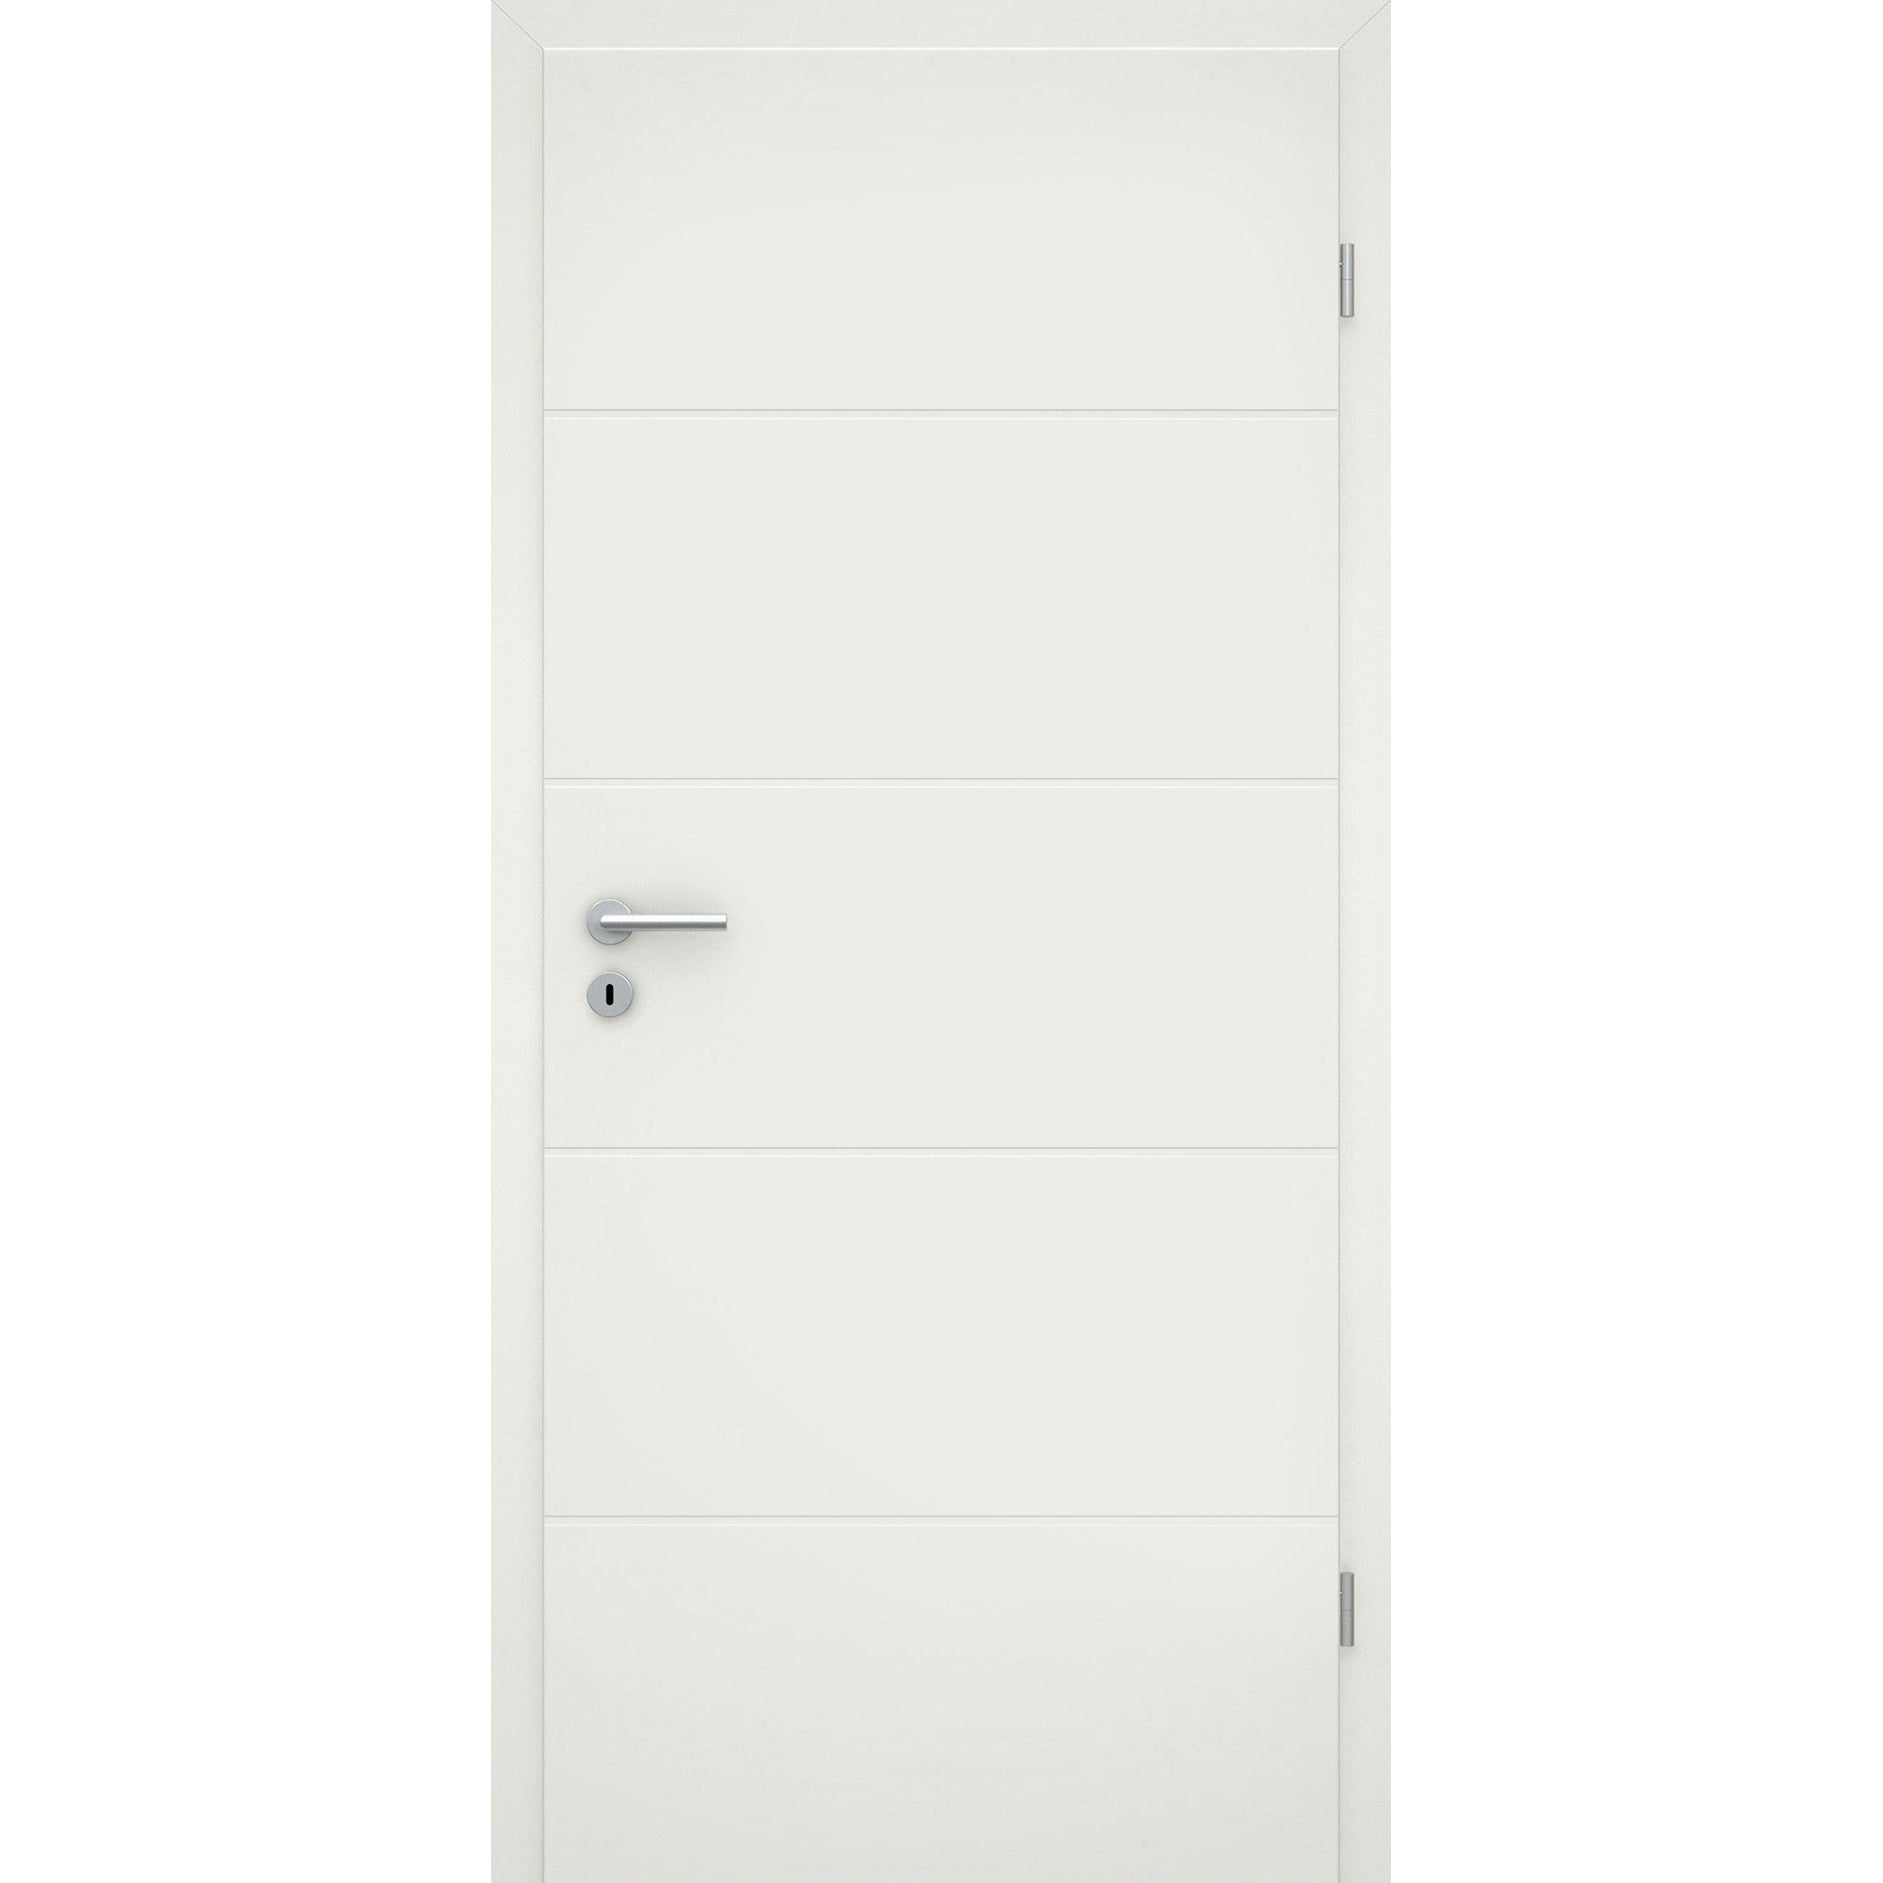 Wohnungseingangstür mit Zarge soft-weiß 4 Rillen Eckkante SK2 / KK3 - Modell Designtür Q41